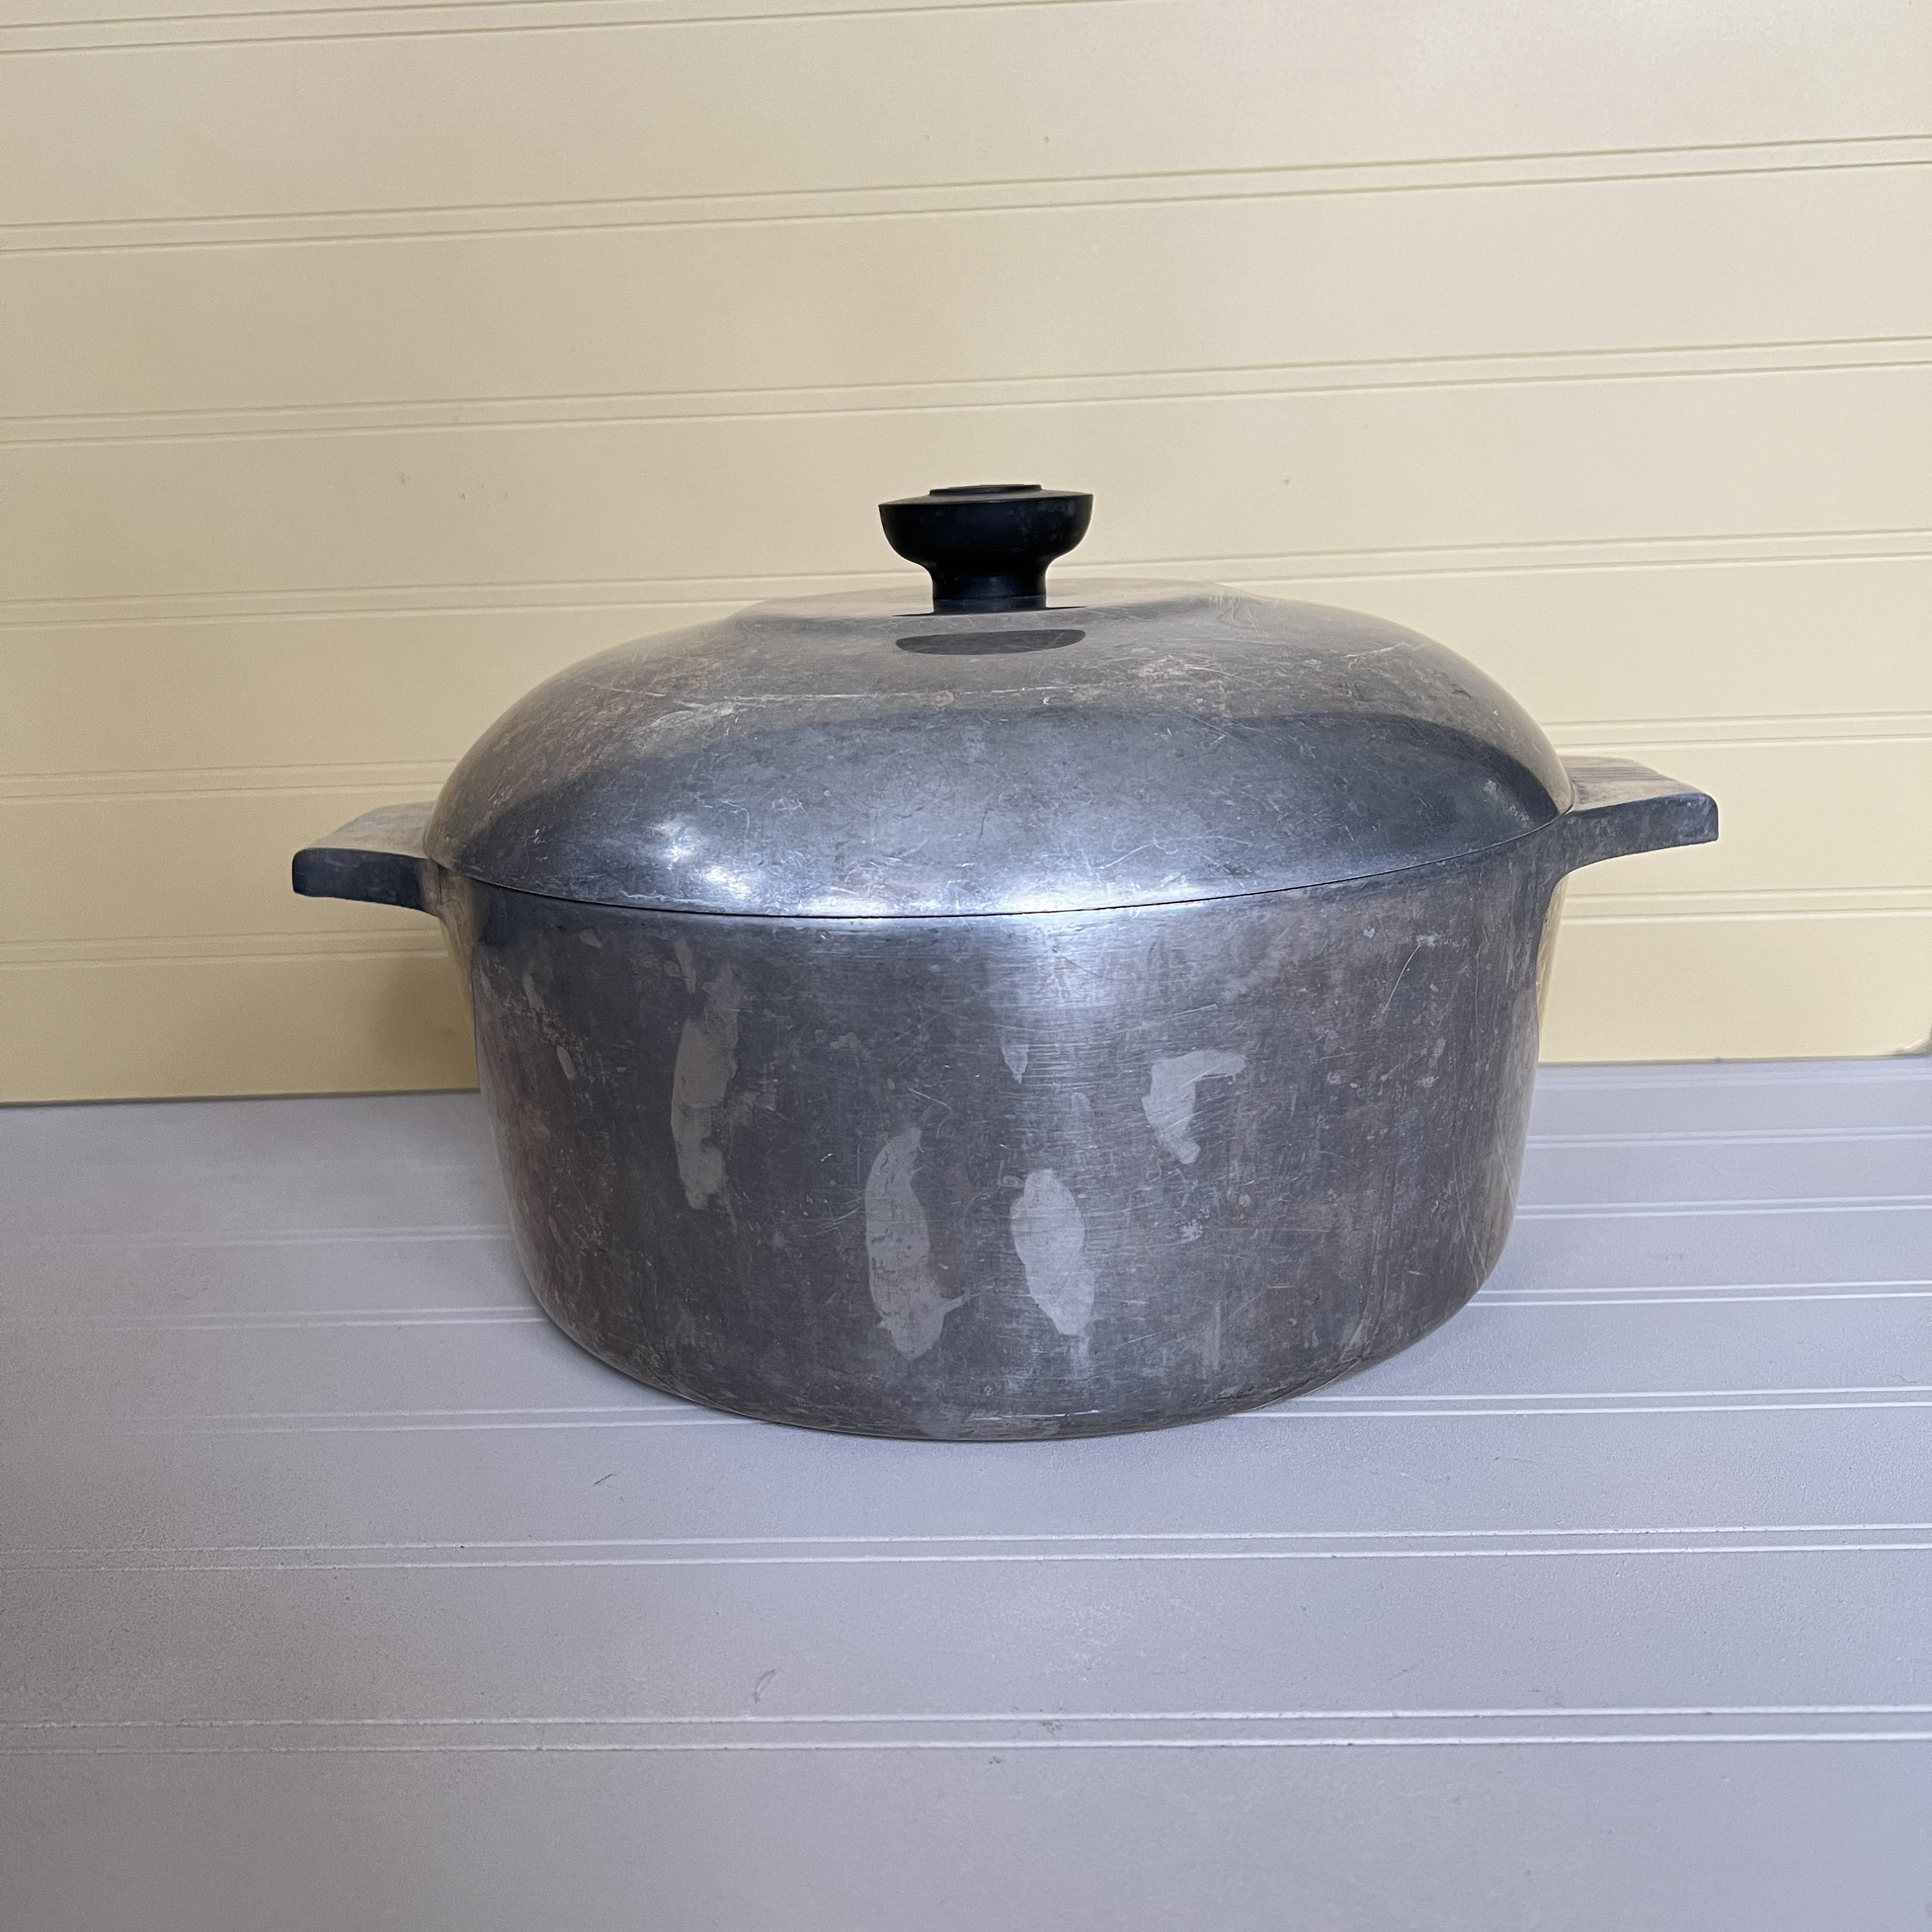 Vintage Wagner Ware Sydney Magnalite 0 3 QT 4683-P Sauce Pan Pot